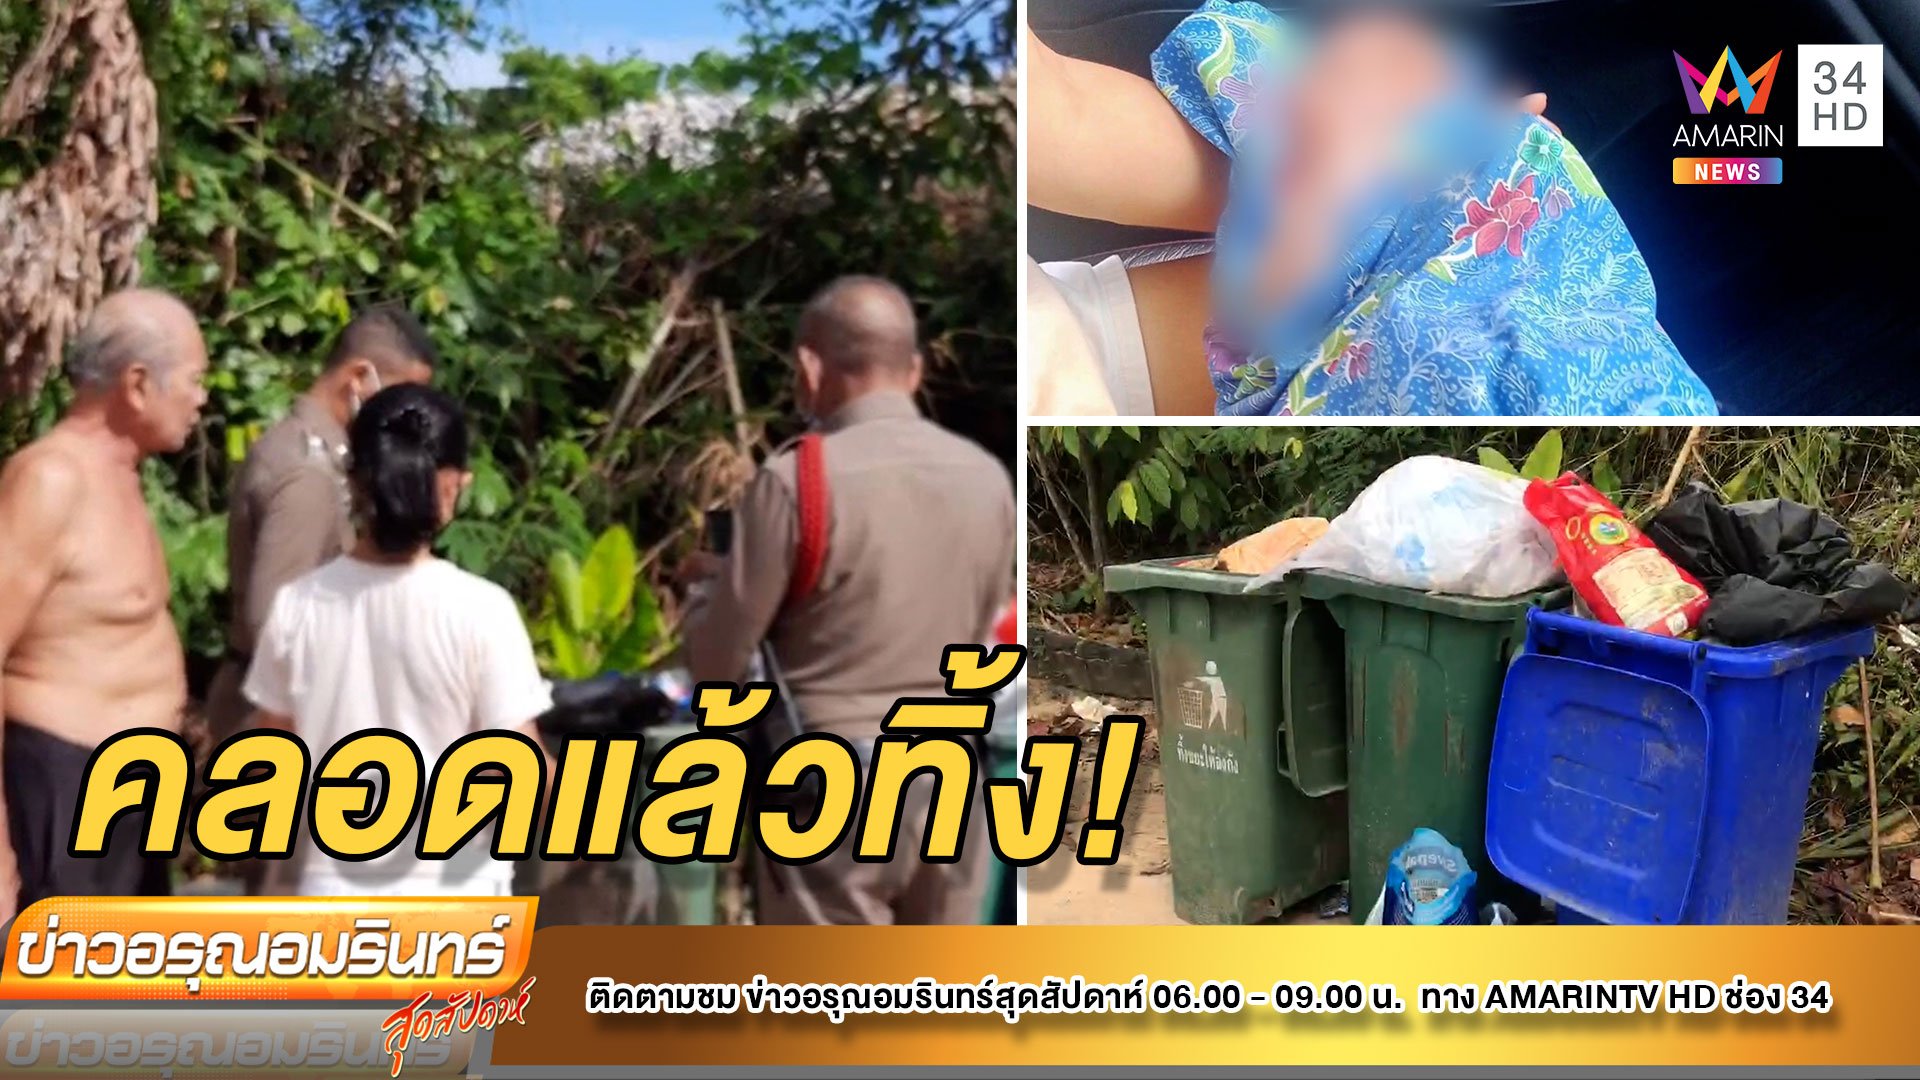 ล่าแม่ใจยักษ์ คลอดลูกทิ้งถังขยะ โชคดีชาวบ้านช่วยรอด | ข่าวอรุณอมรินทร์ | 1 ม.ค. 65 | AMARIN TVHD34